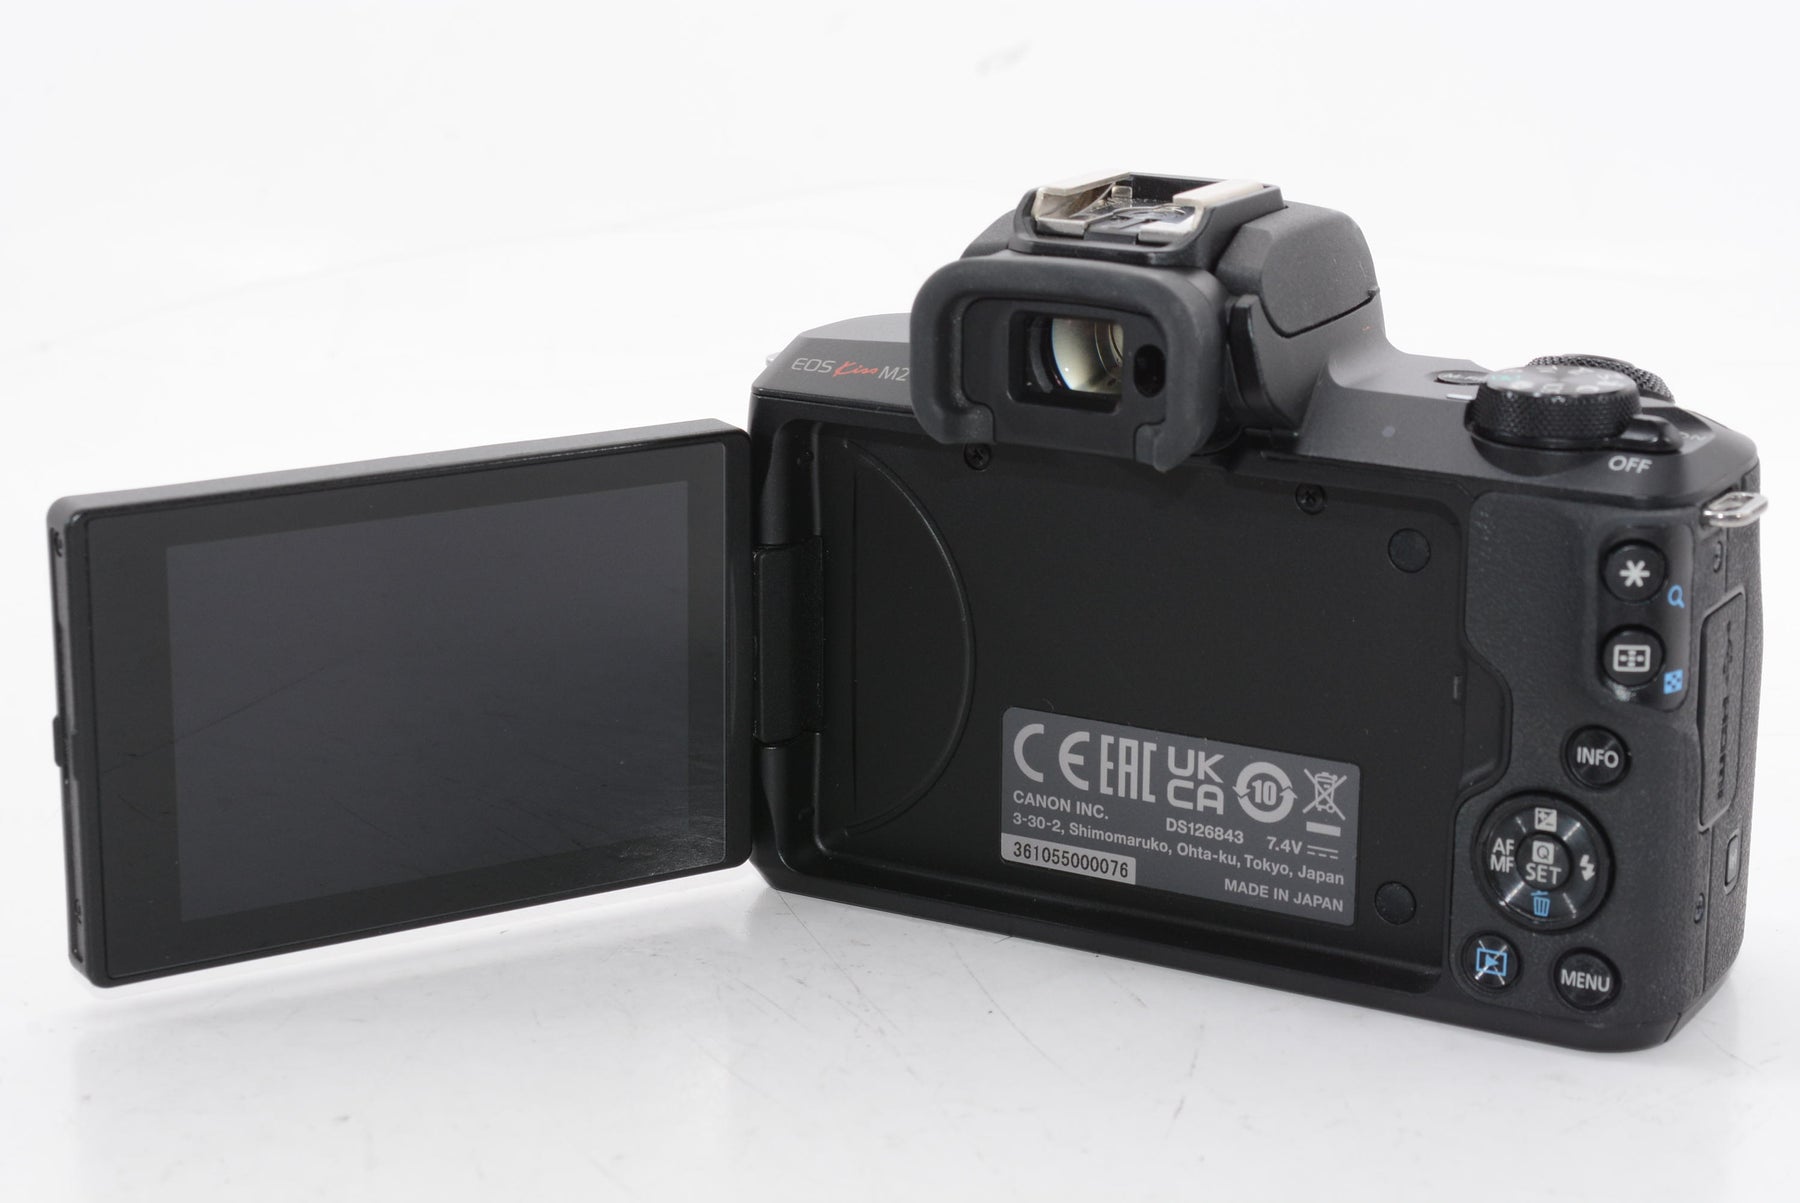 【外観特上級】Canon ミラーレス一眼カメラ EOS Kiss M2 標準ズームレンズキット ブラック KISSM2BK-1545